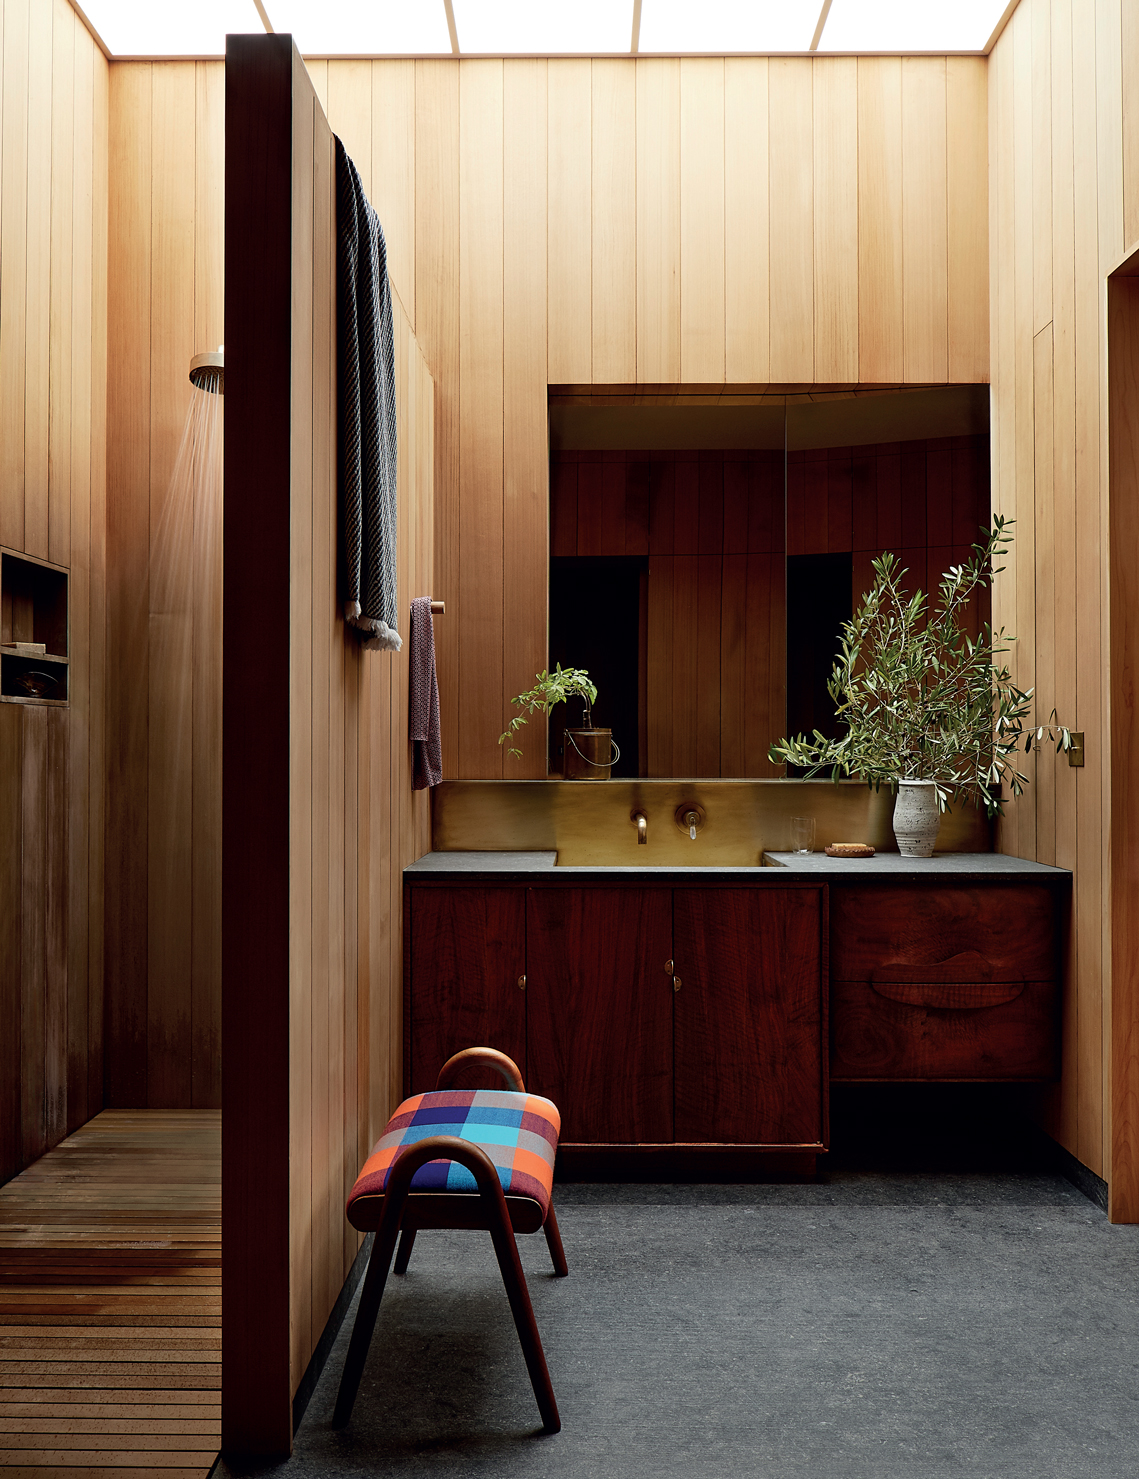 Phòng tắm được thiết kế theo phong cách truyền thống pha lẫn hiện đại, bên trên là cửa sổ trần đón sáng, nội thất chọn lựa gỗ tuyết tùng xử lý chống thấm chống mốc hiệu quả.